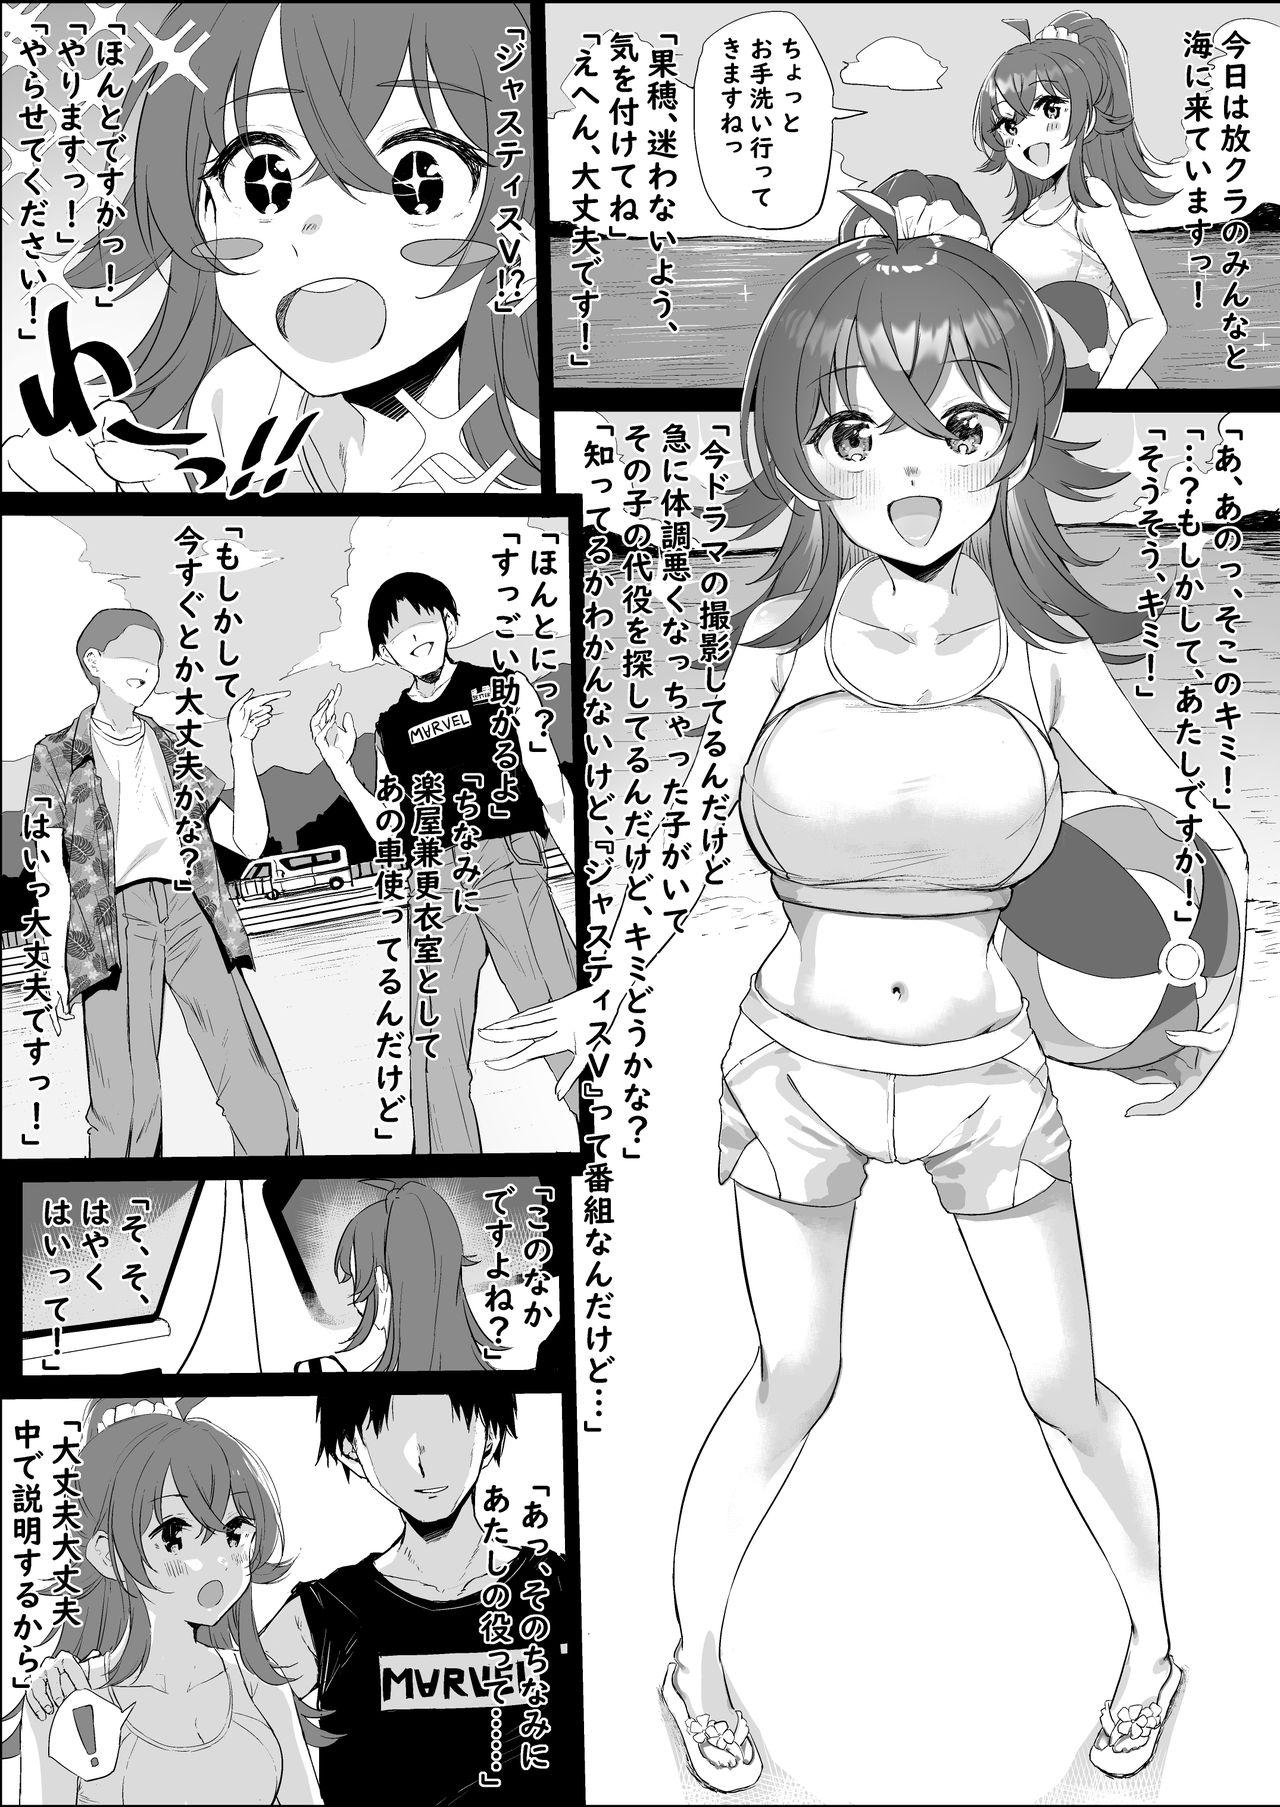 Komiya Kaho Manga 0